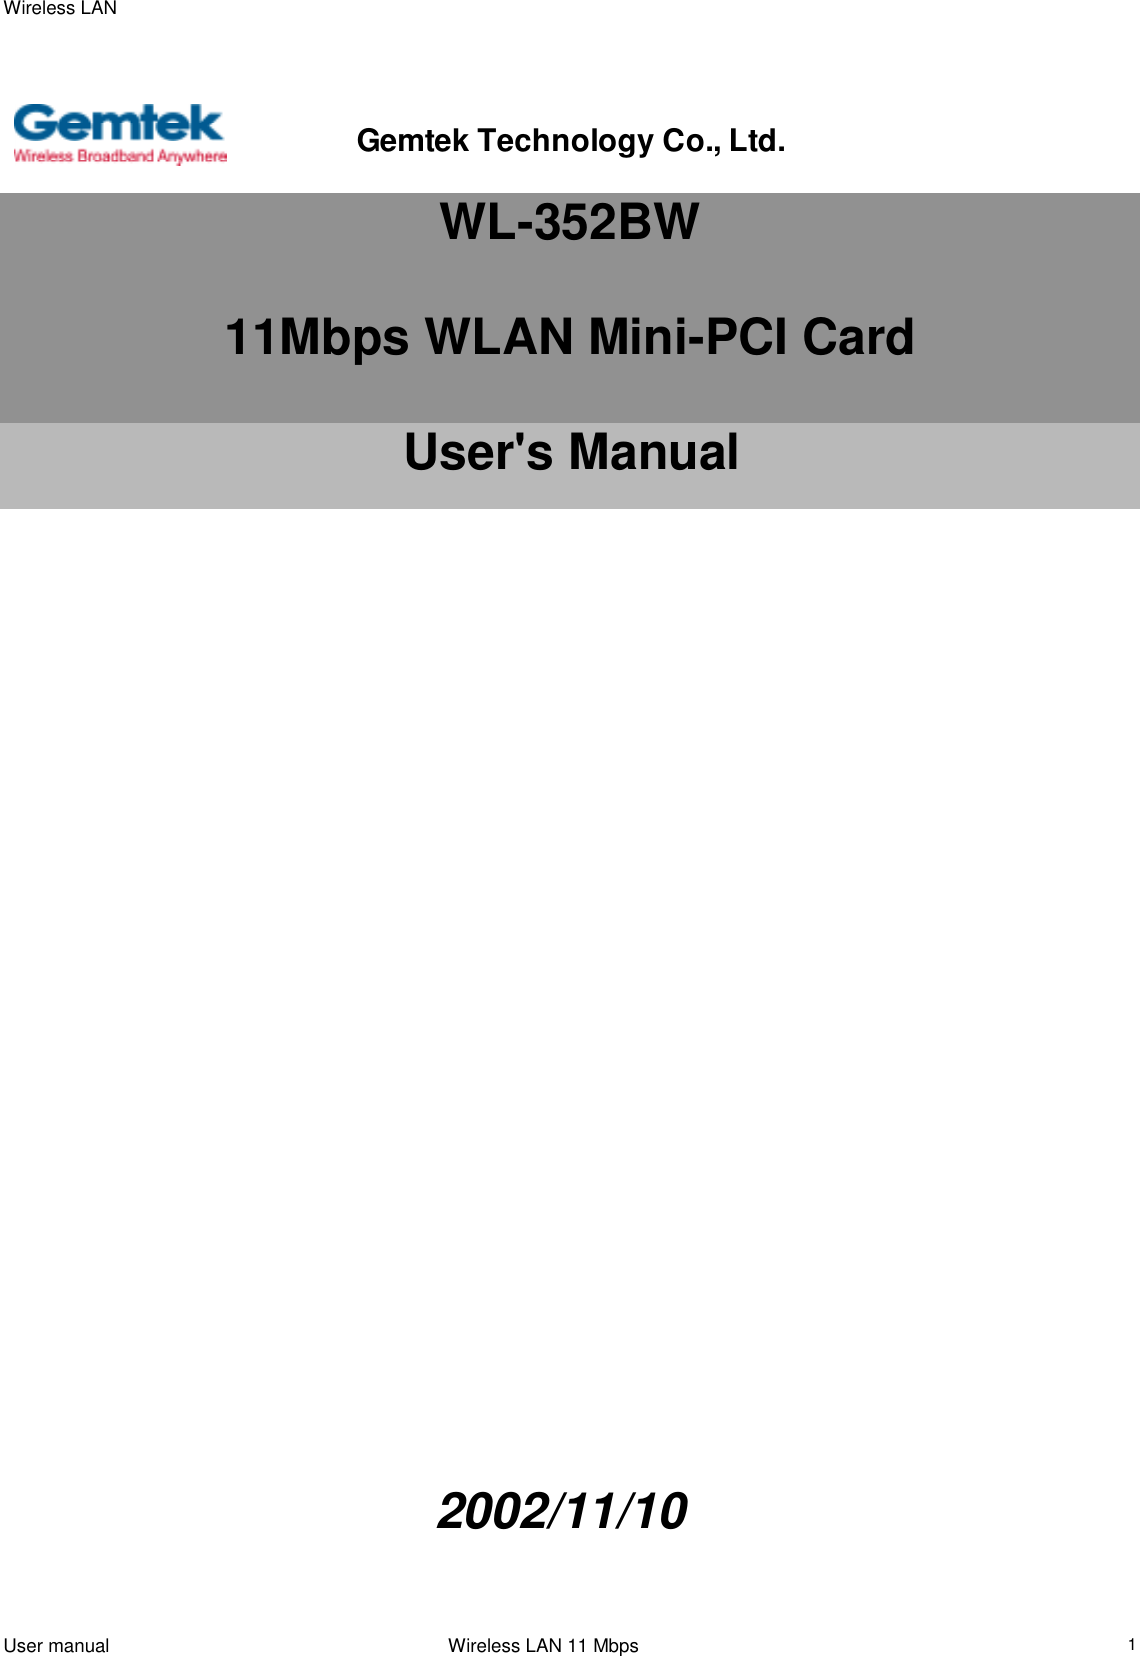 Wireless LANUser manual                                                                 Wireless LAN 11 Mbps1WL-352BW11Mbps WLAN Mini-PCI CardUser&apos;s Manual       2002/11/10Gemtek Technology Co., Ltd.